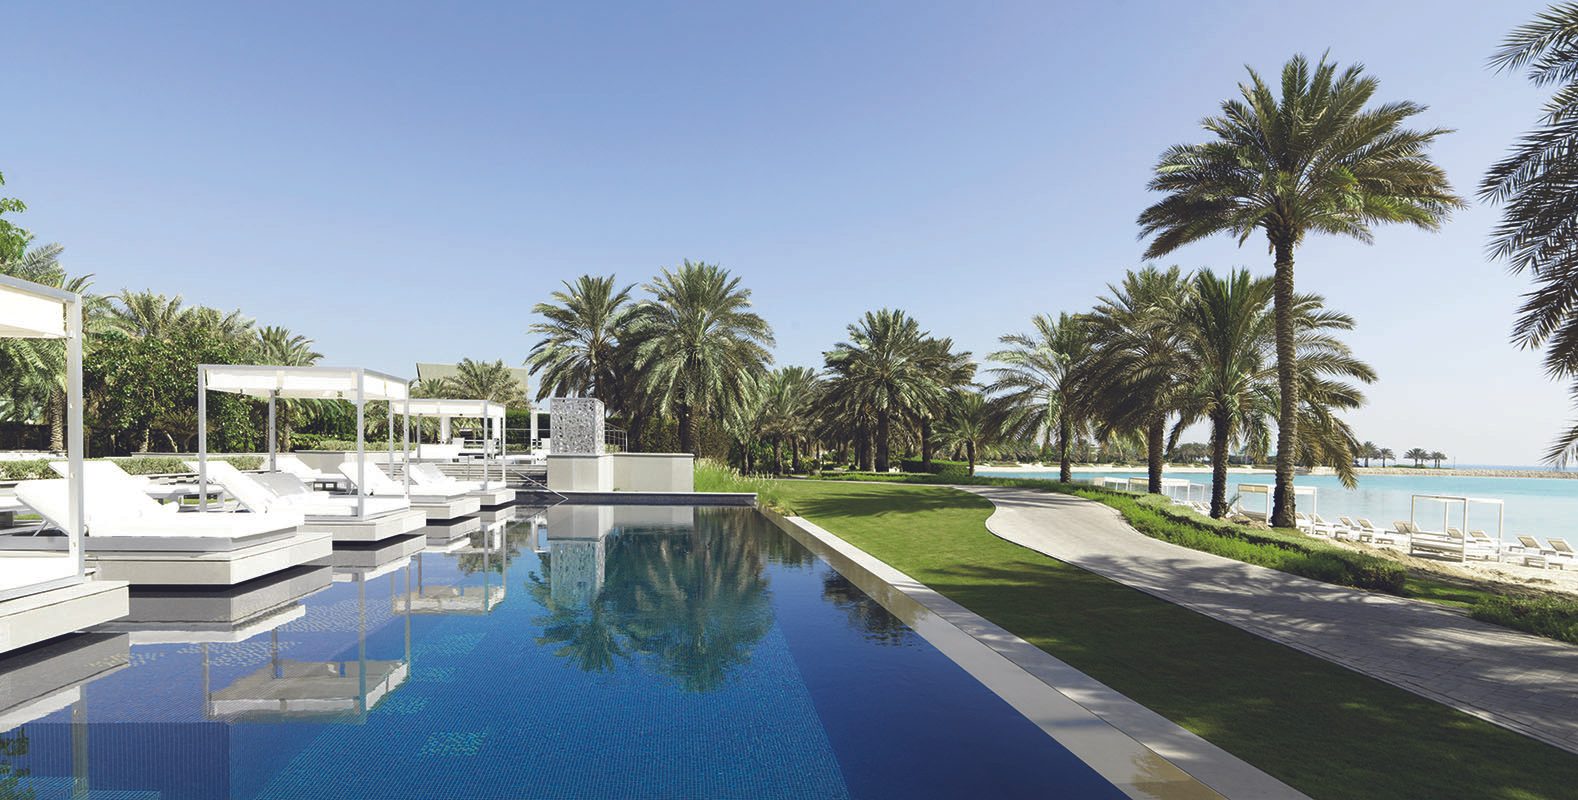 فندق الريتز كارلتون يقدّم لضيوفه حدائق واسعة وبرك سباحة متعددة